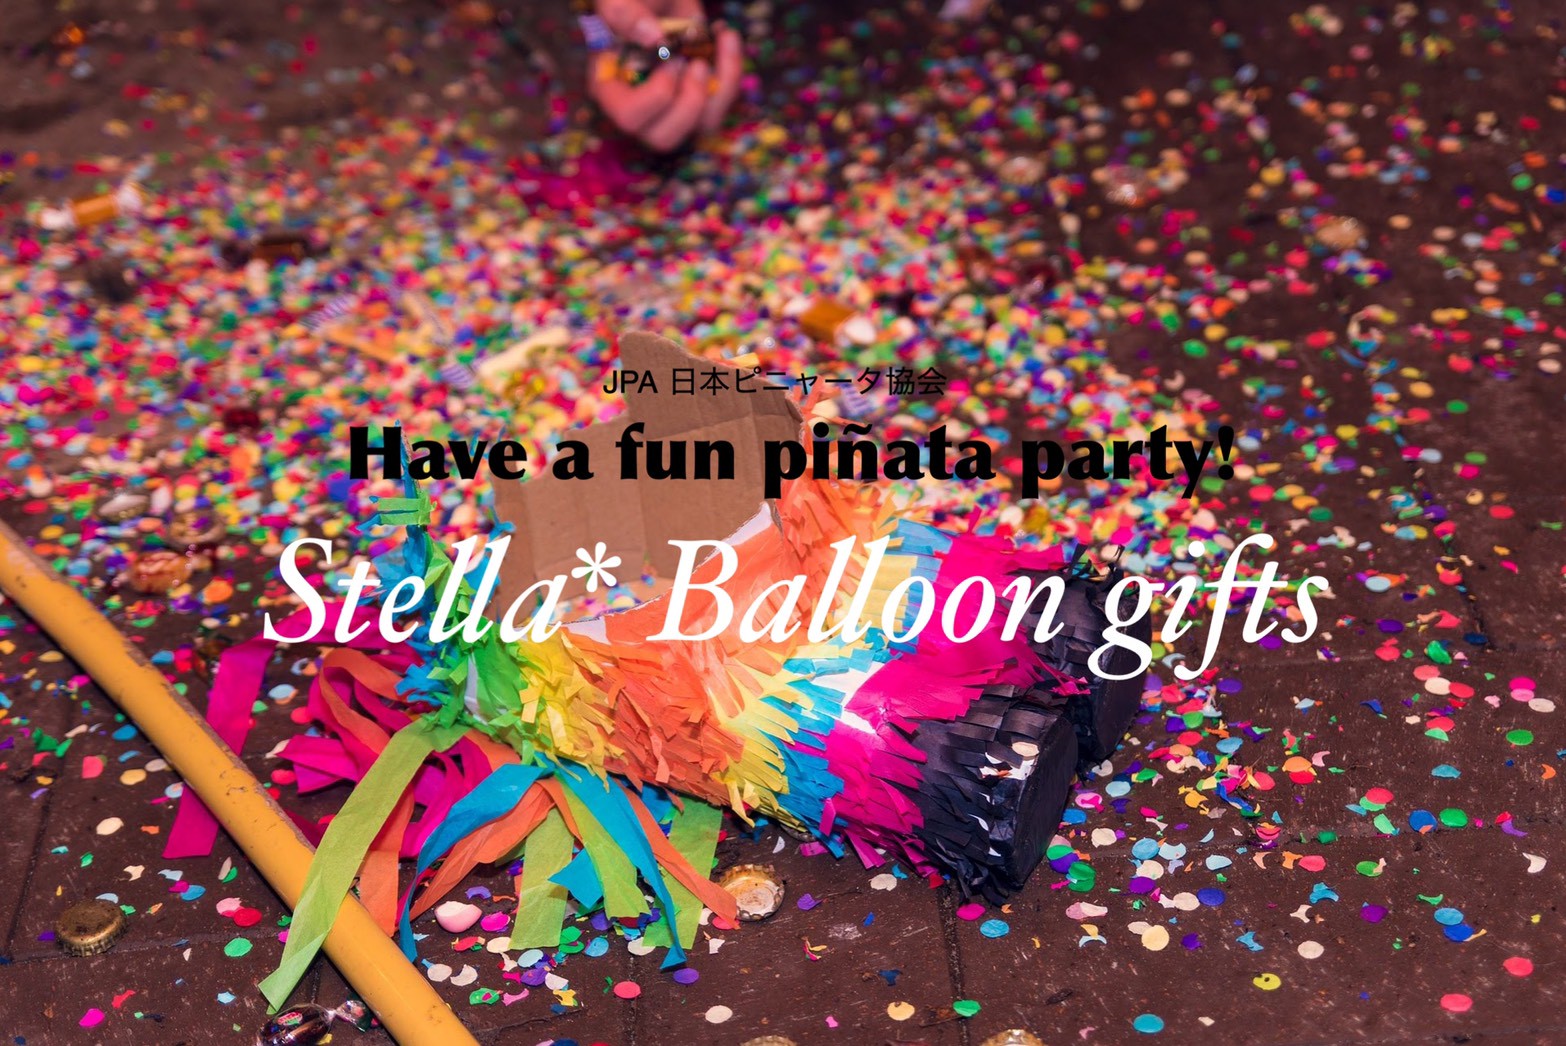 Stella* Balloon gifts ステラバルーンギフト(Pinata shop)